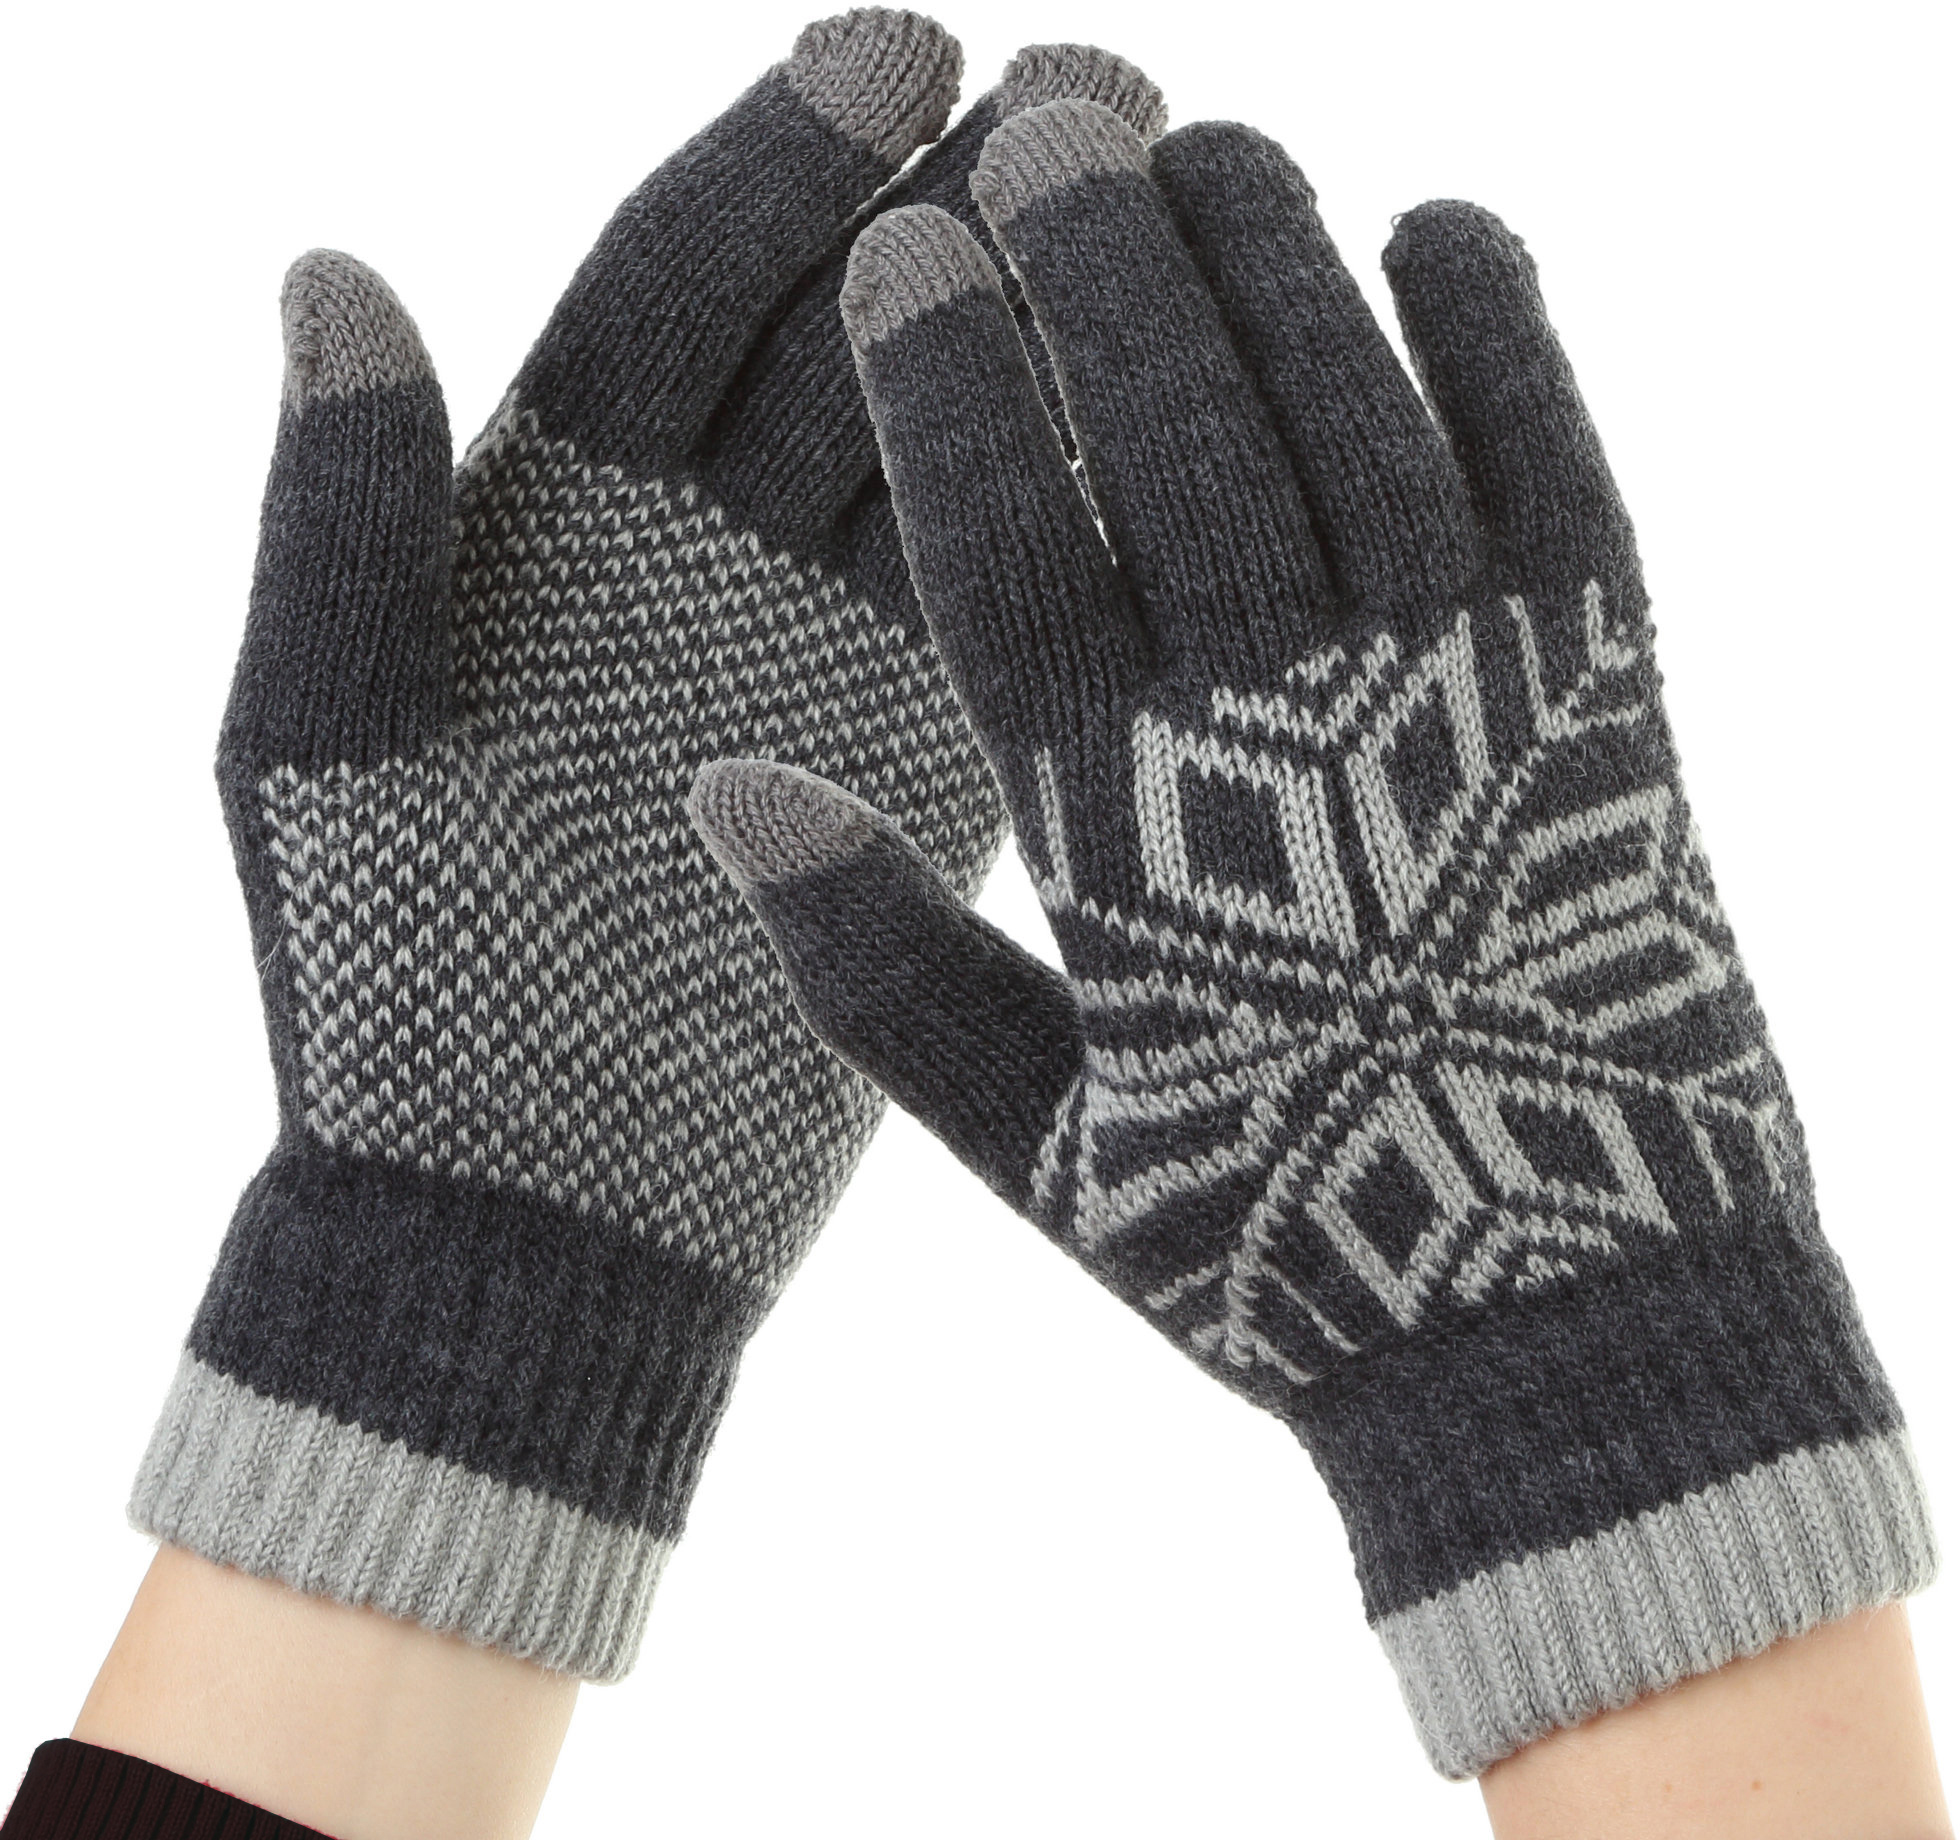 Купить мужские перчатки для сенсорных экранов в интернет магазине thebestterrier.ru